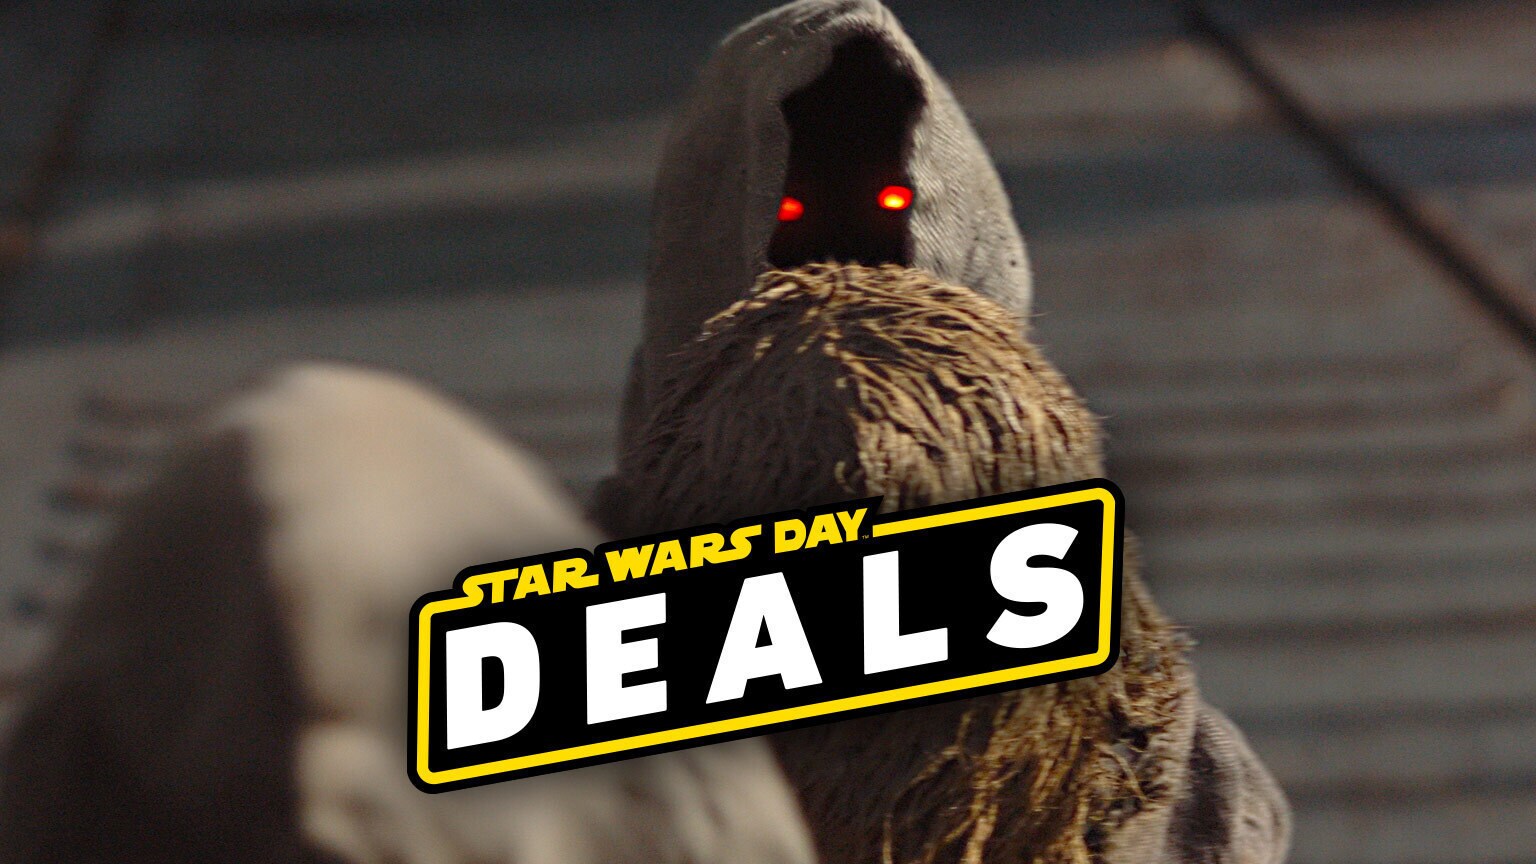 Star Wars Day 2021 Deals!